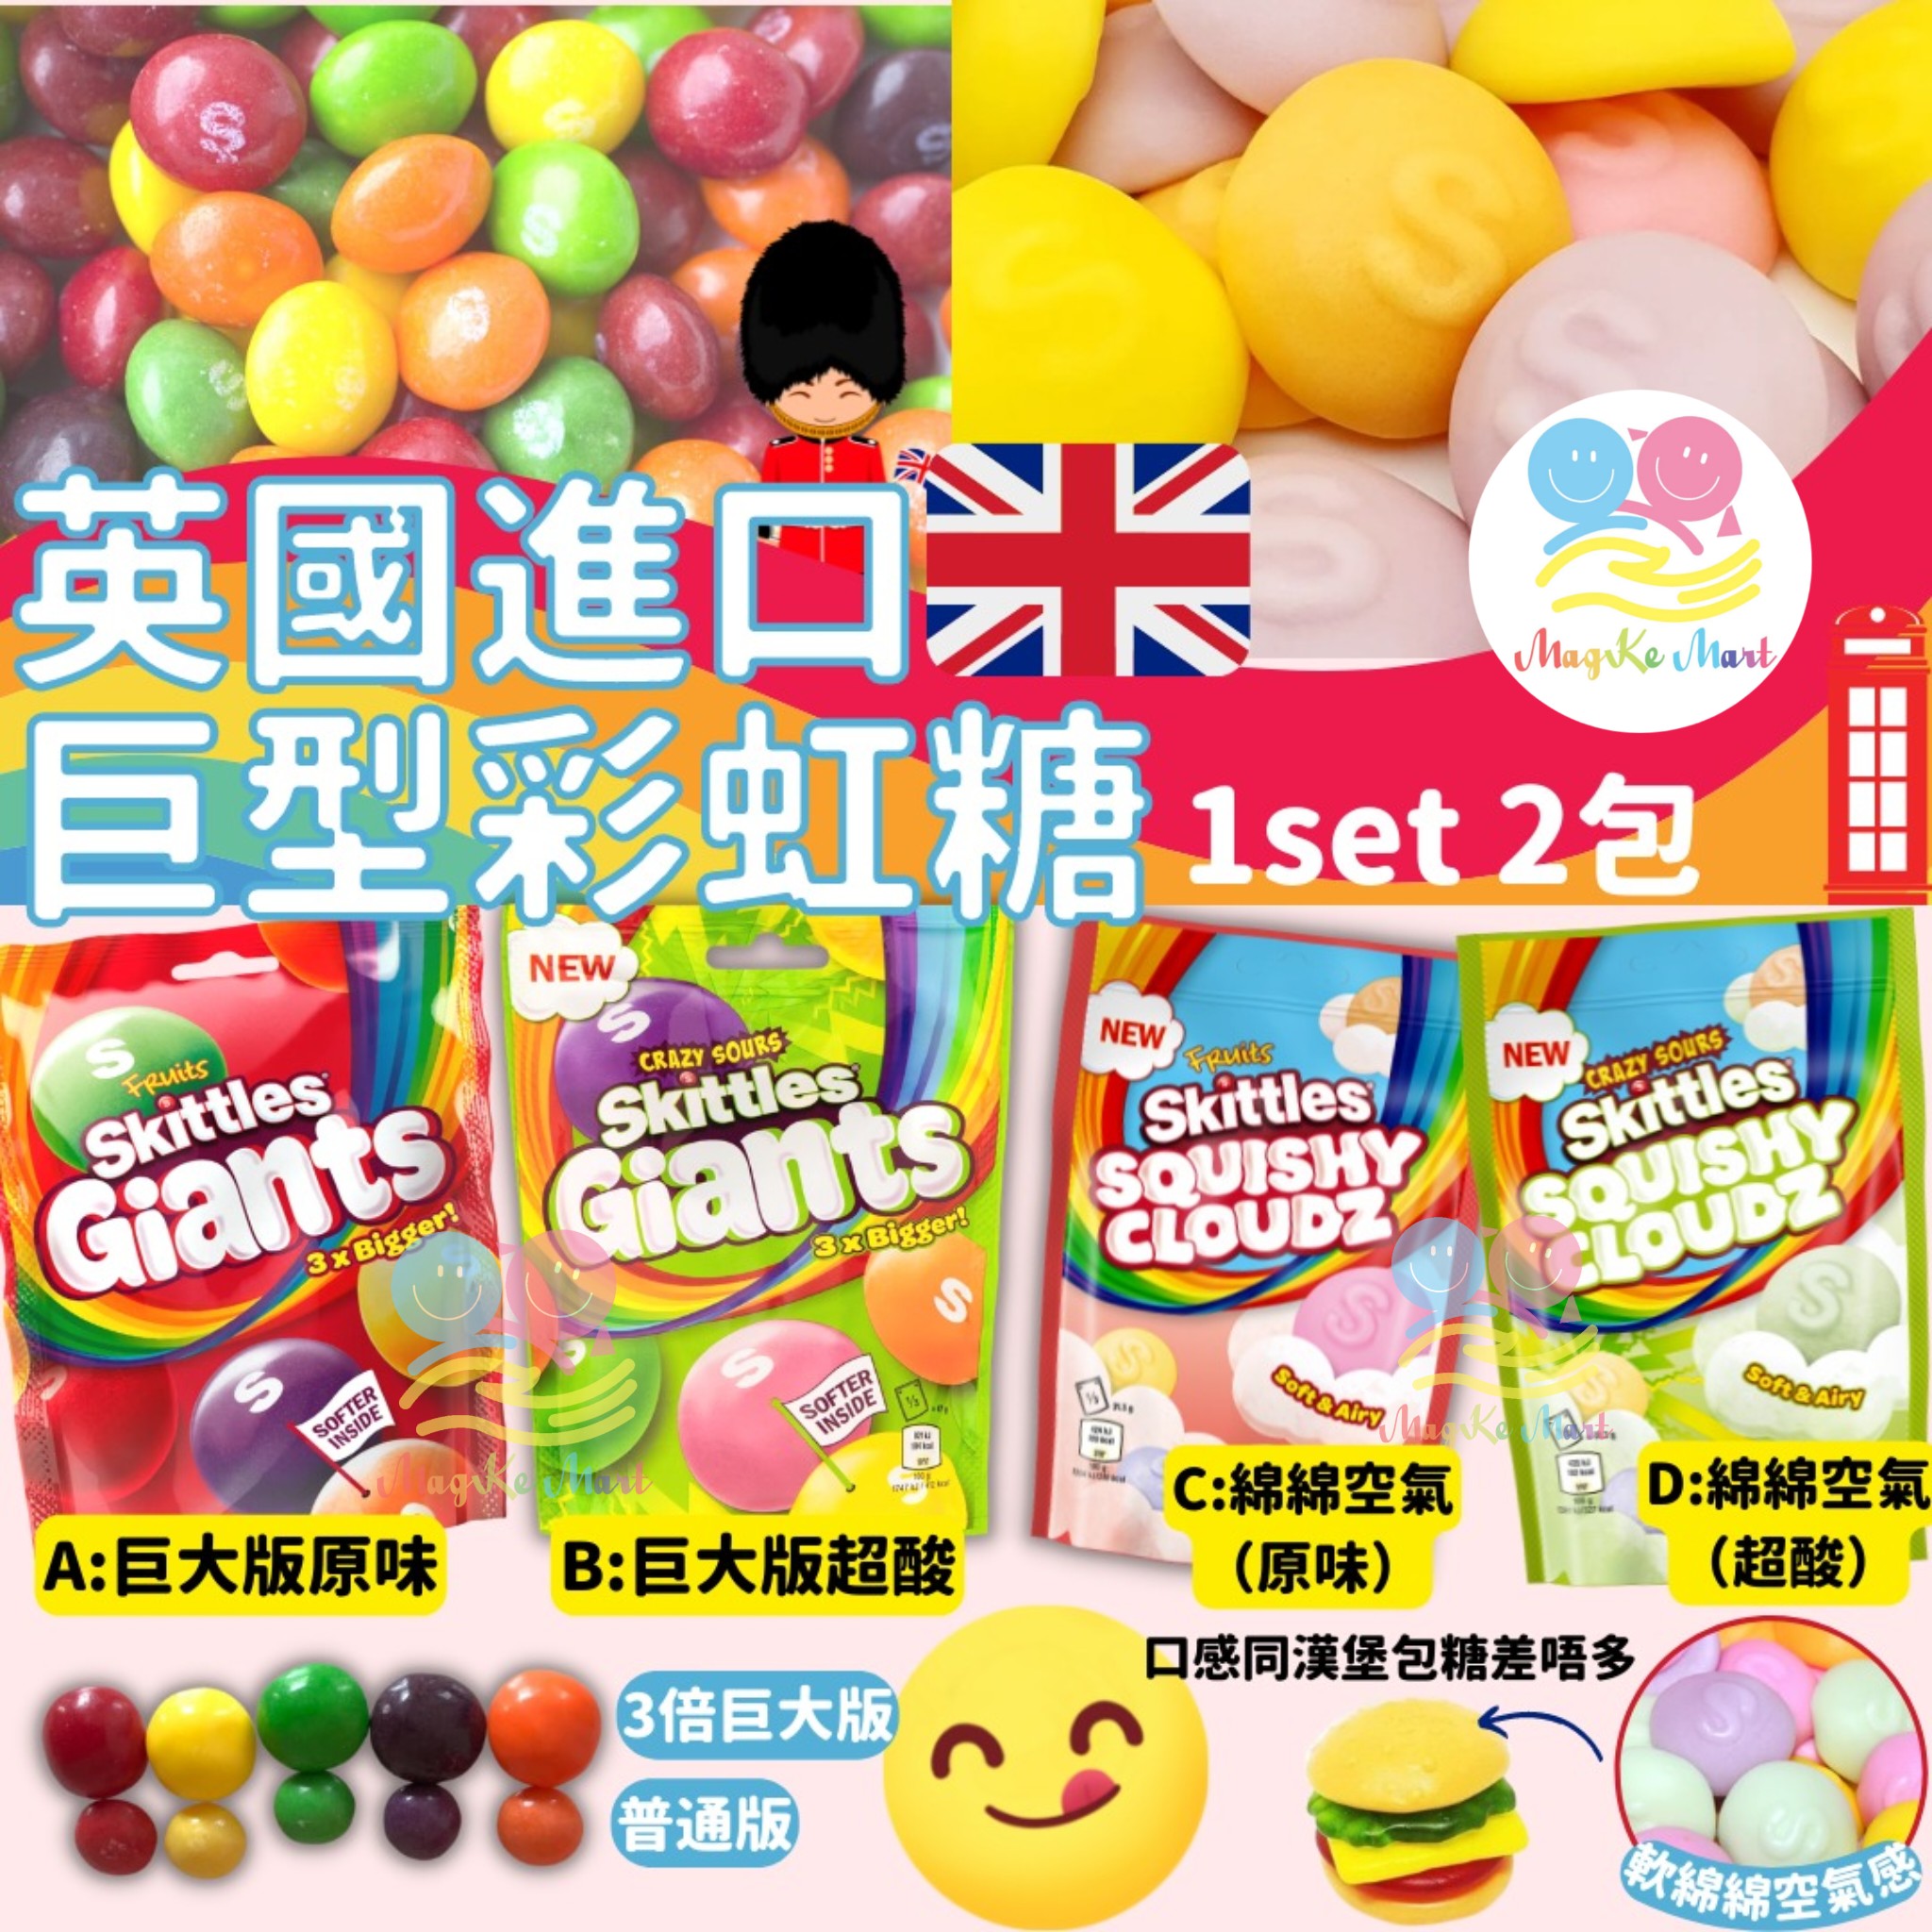 英國 Skittles 巨型彩虹糖(1套2包) (C) 綿綿空氣(原味) 94g